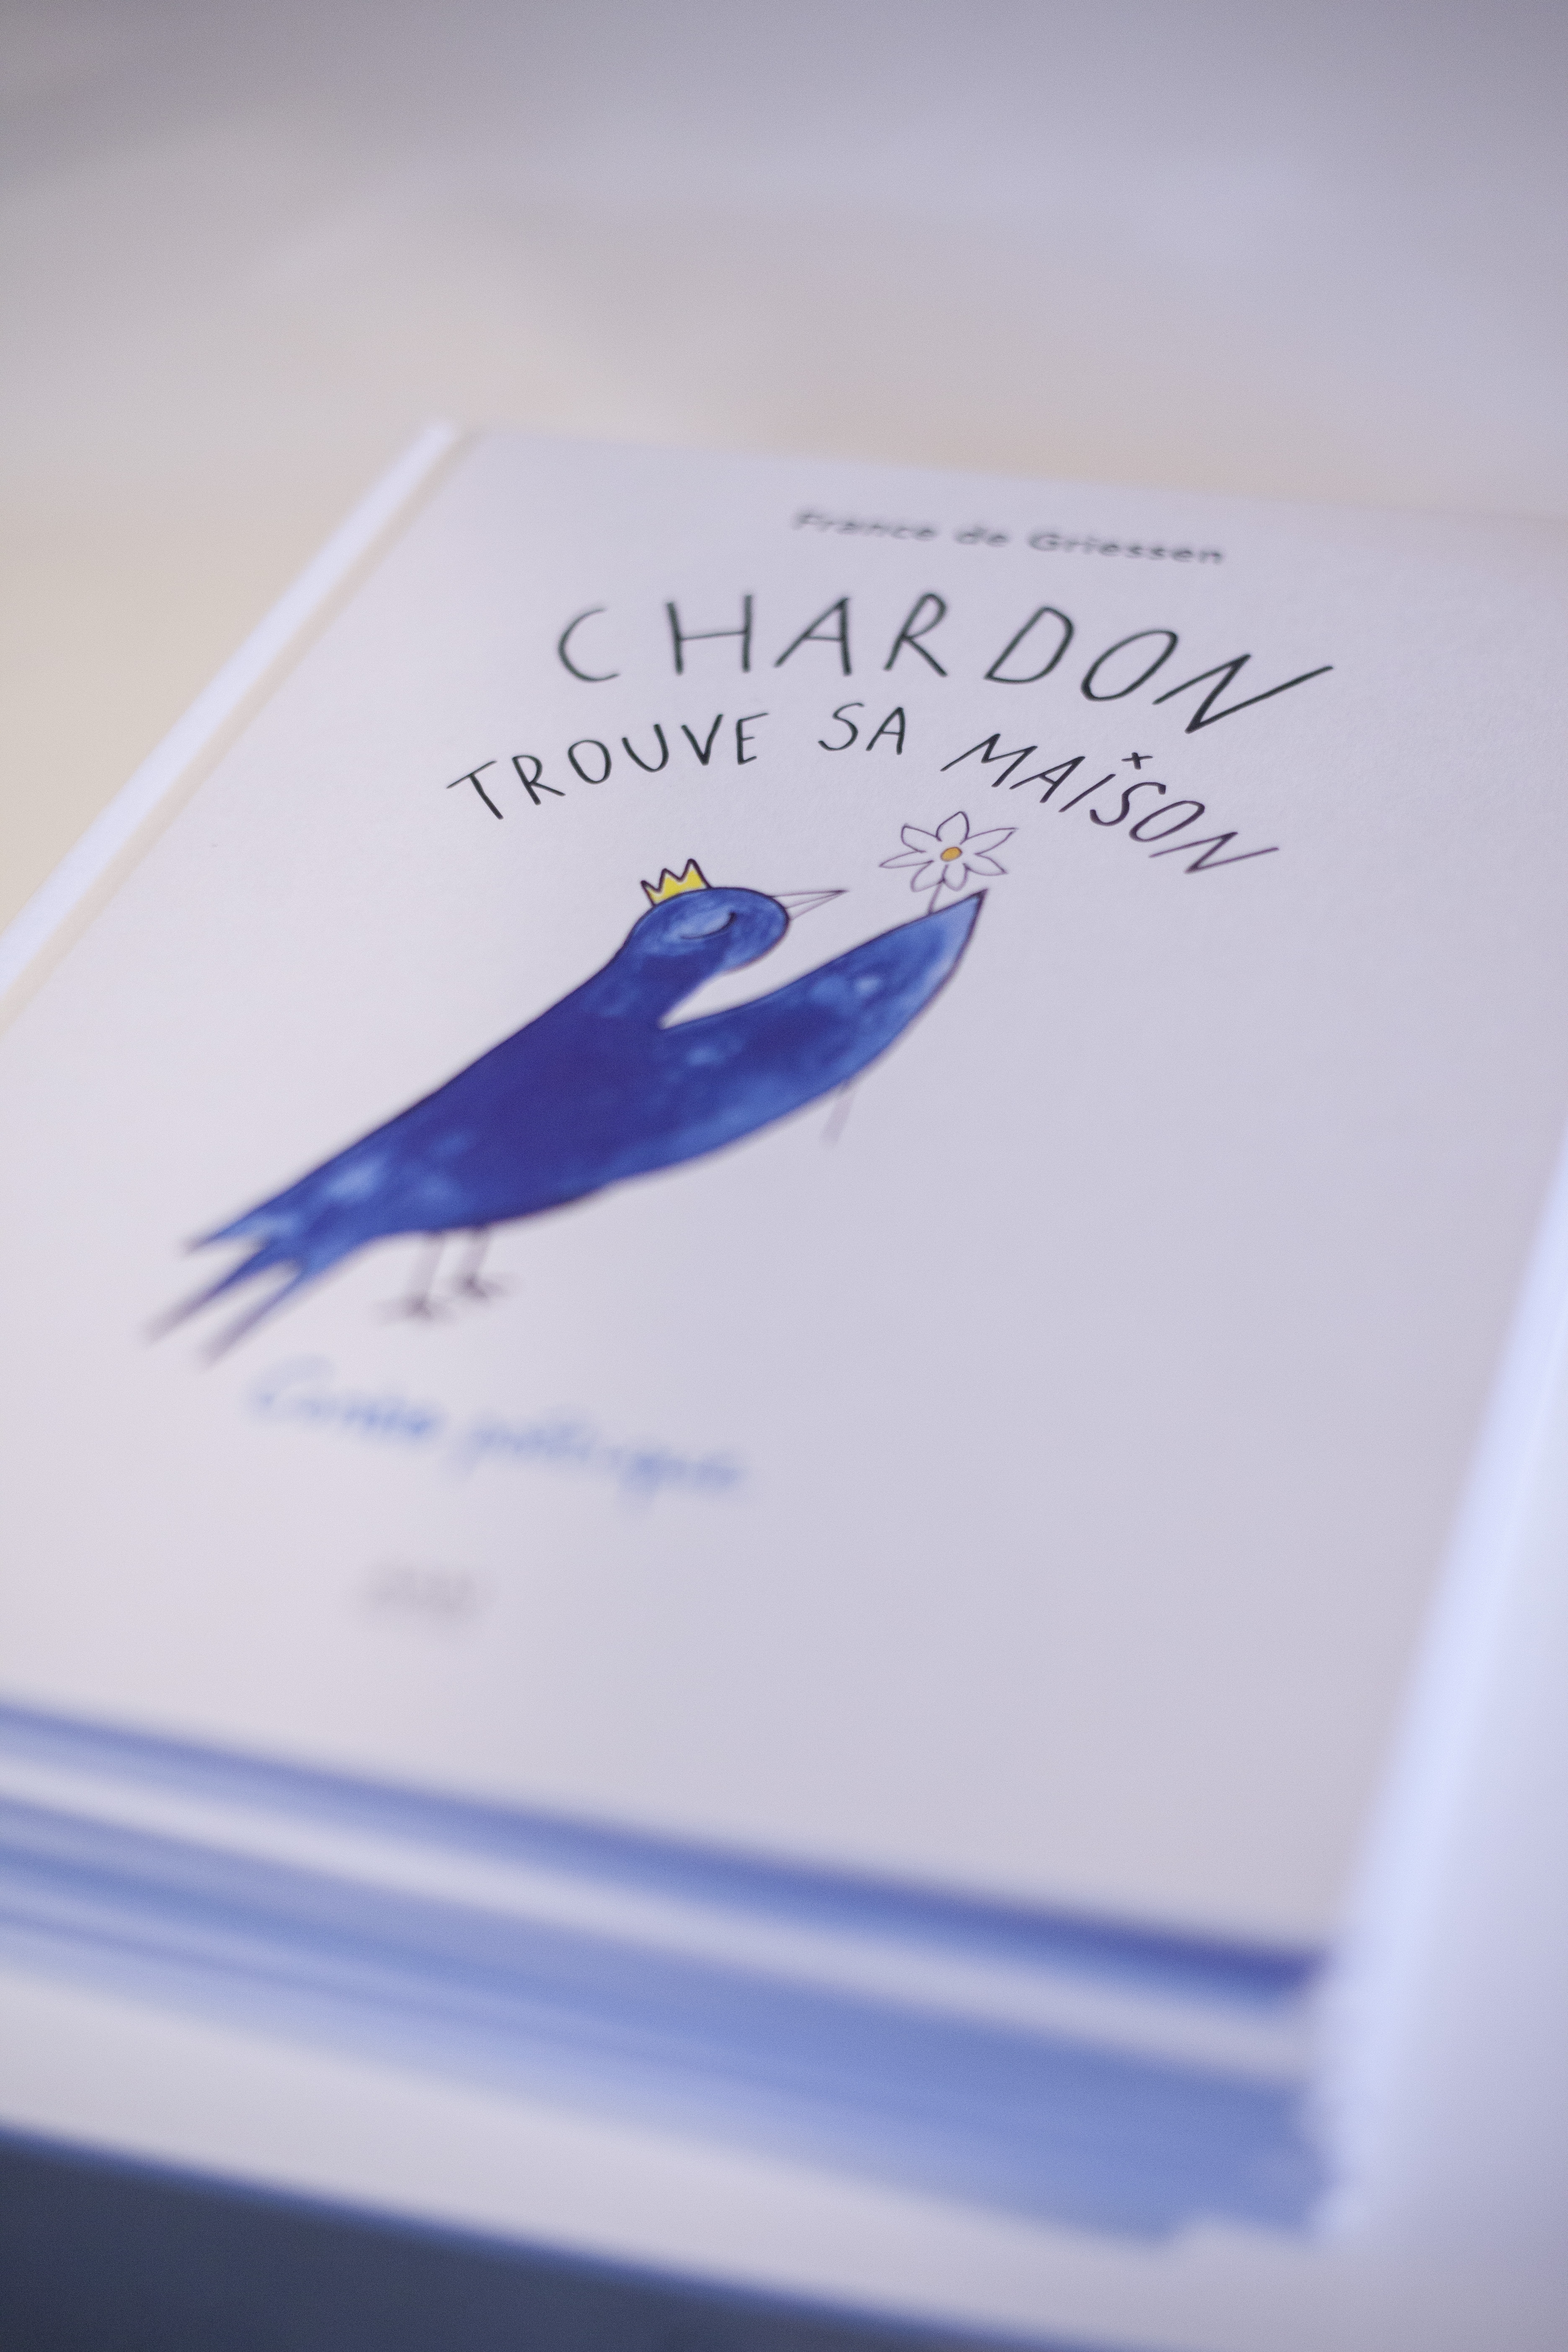 Couverture de livre avec oiseau bleu aquarelle